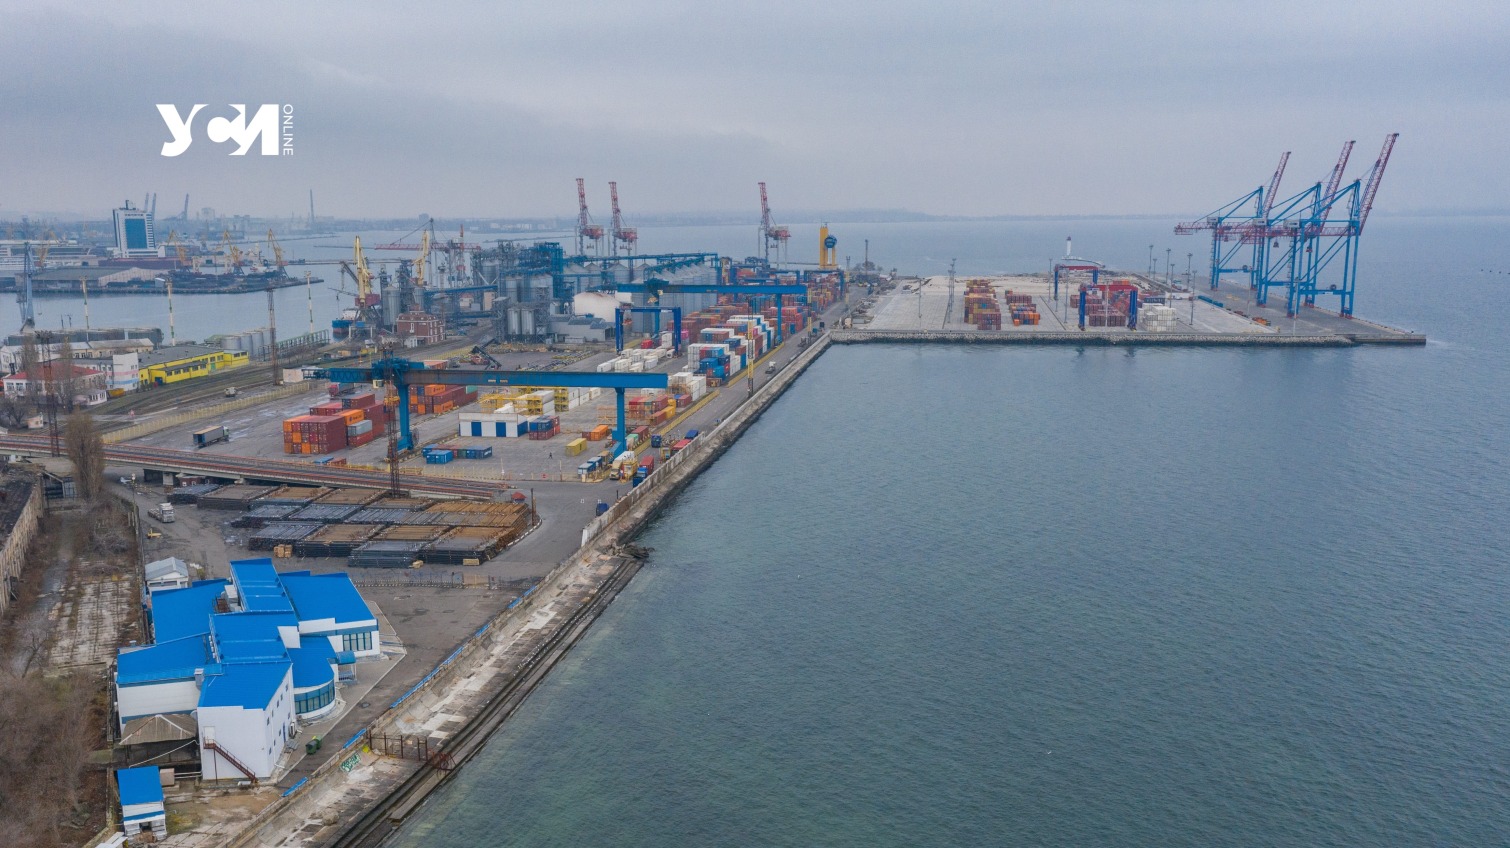 Деблокада порта Одессы: коридор зерновозам могут обеспечить страны НАТО «фото»